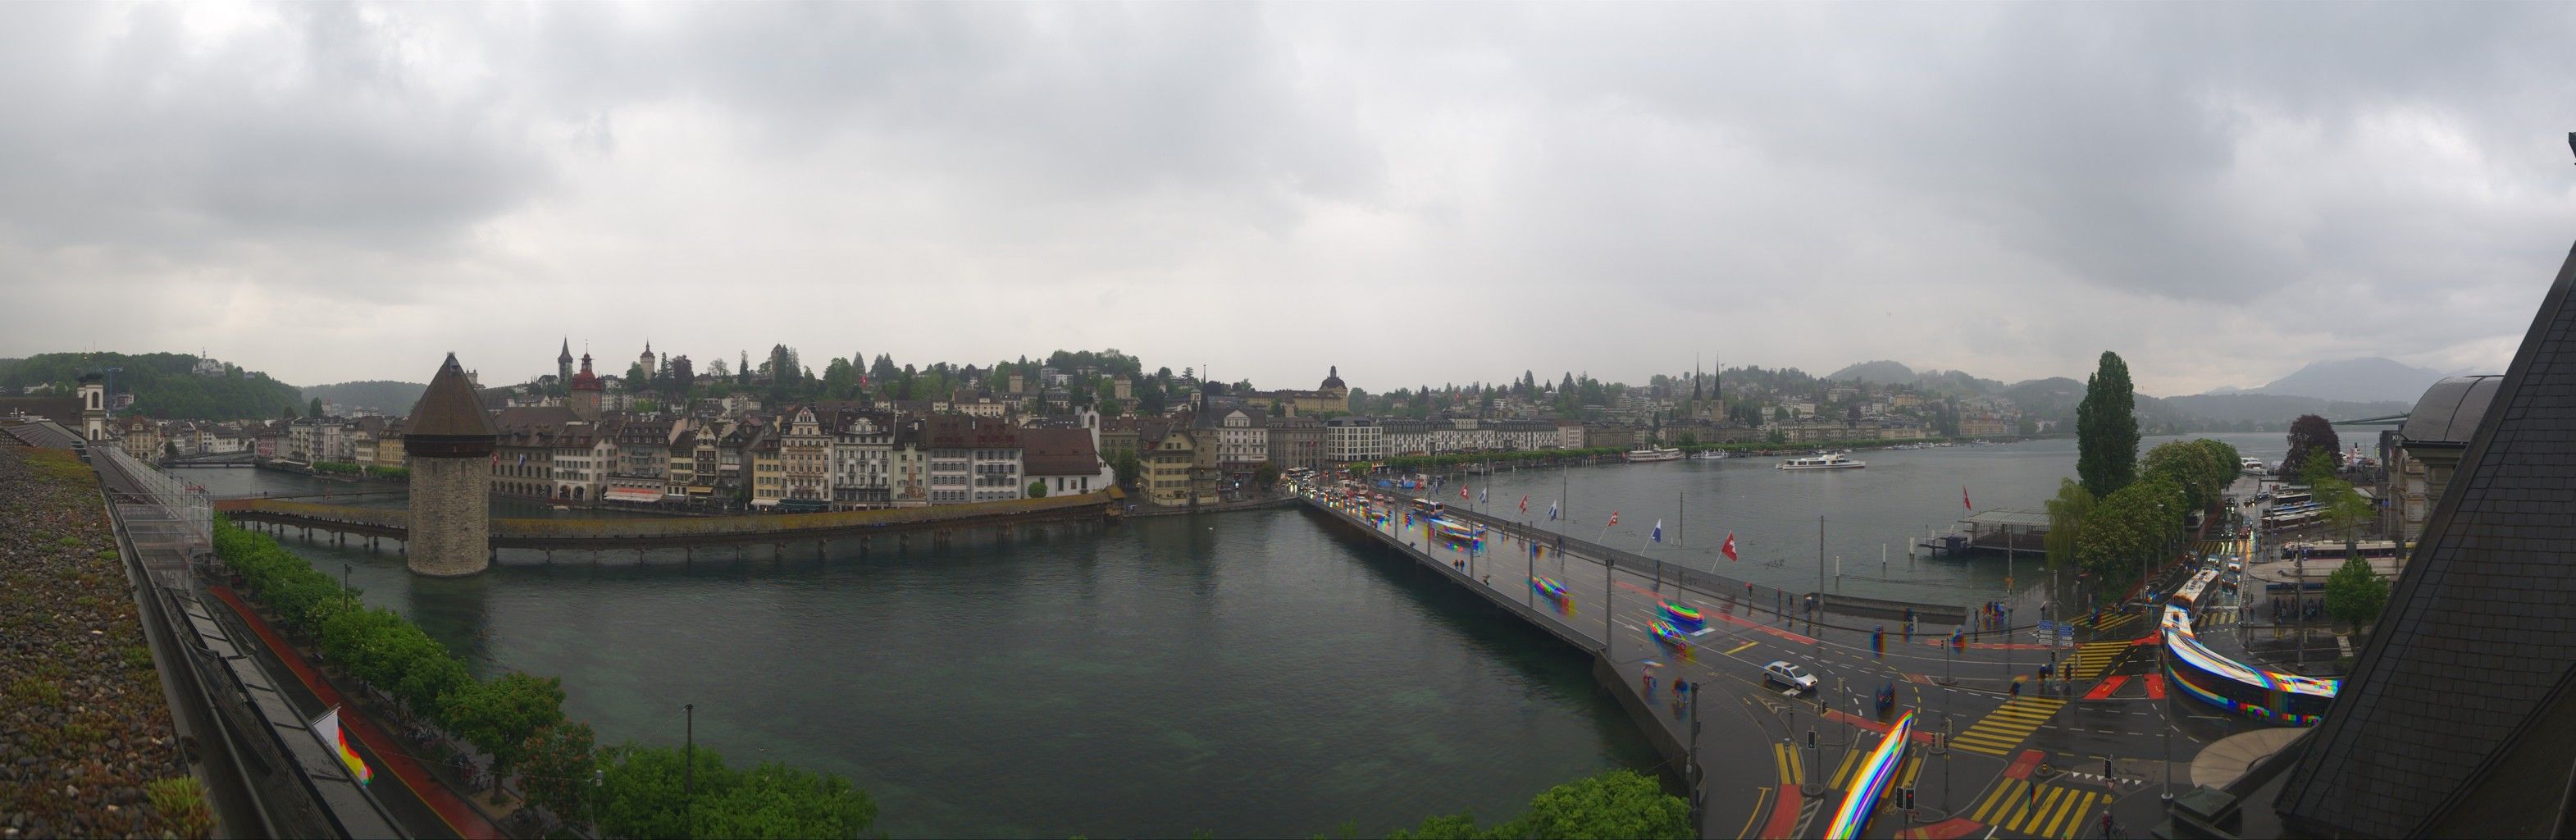 Luzern: Kapellbrücke